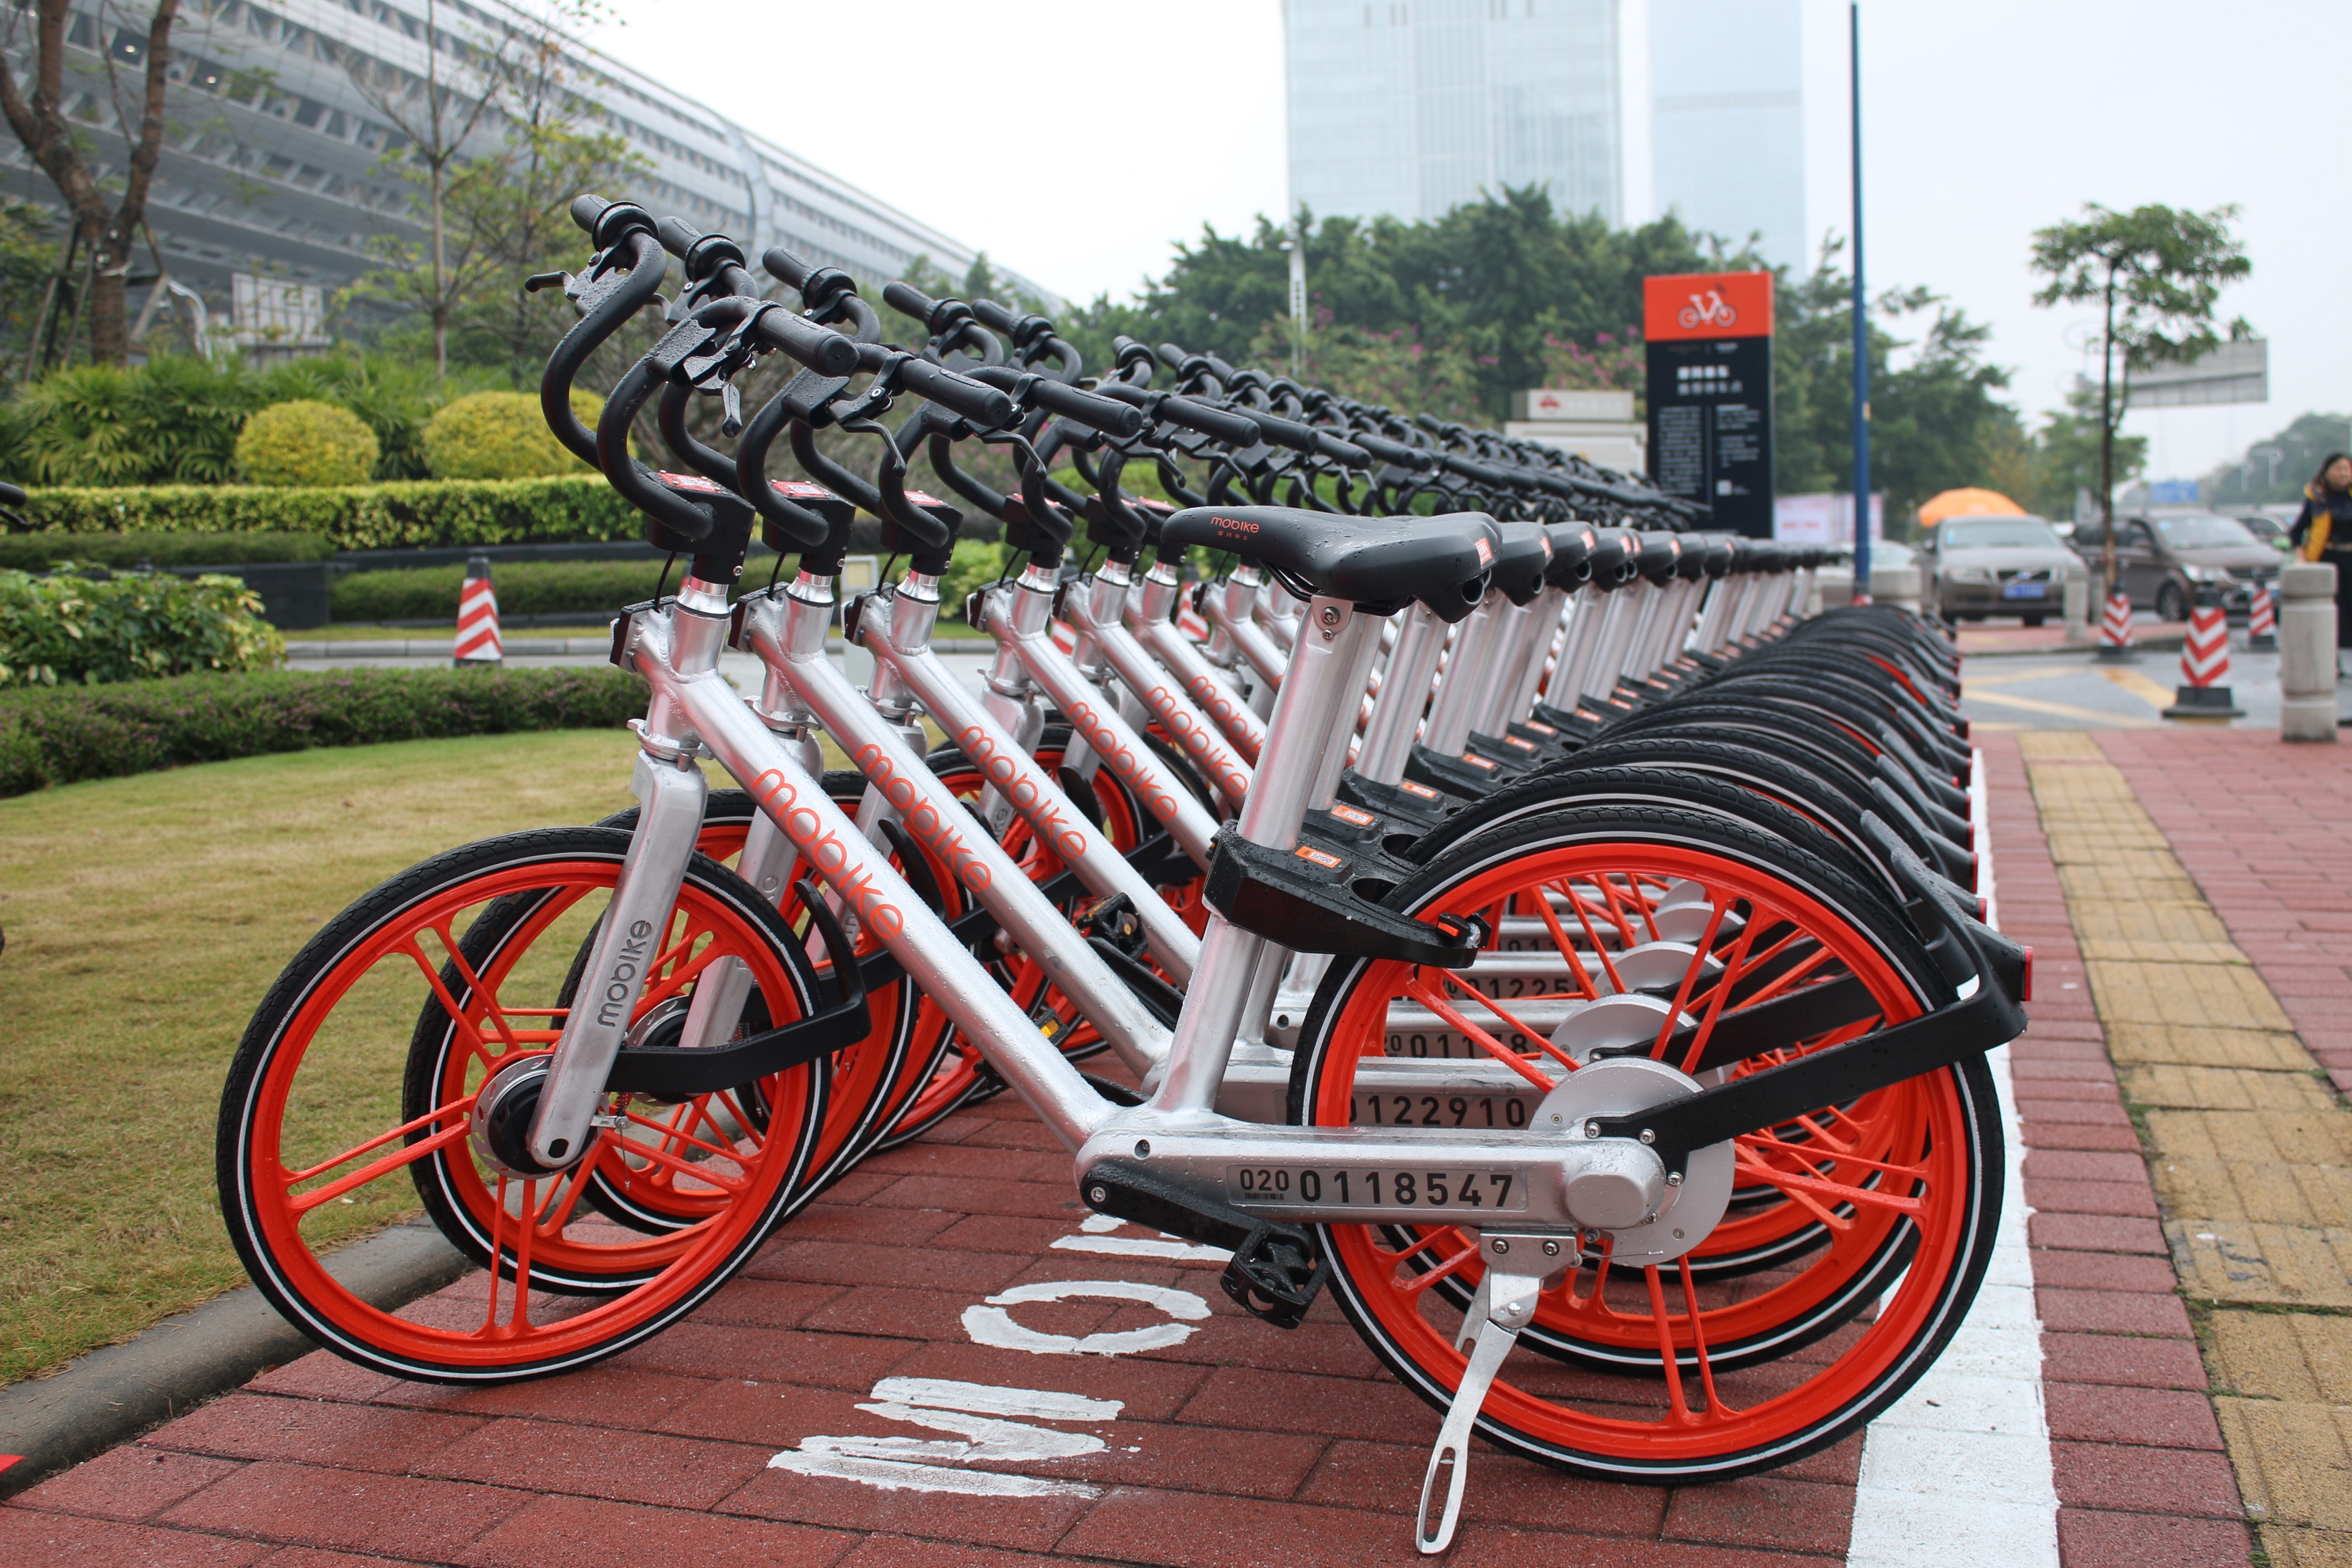 摩拜单车是全球第一个智能共享公共自行车项目,宾客只需通过对应手机